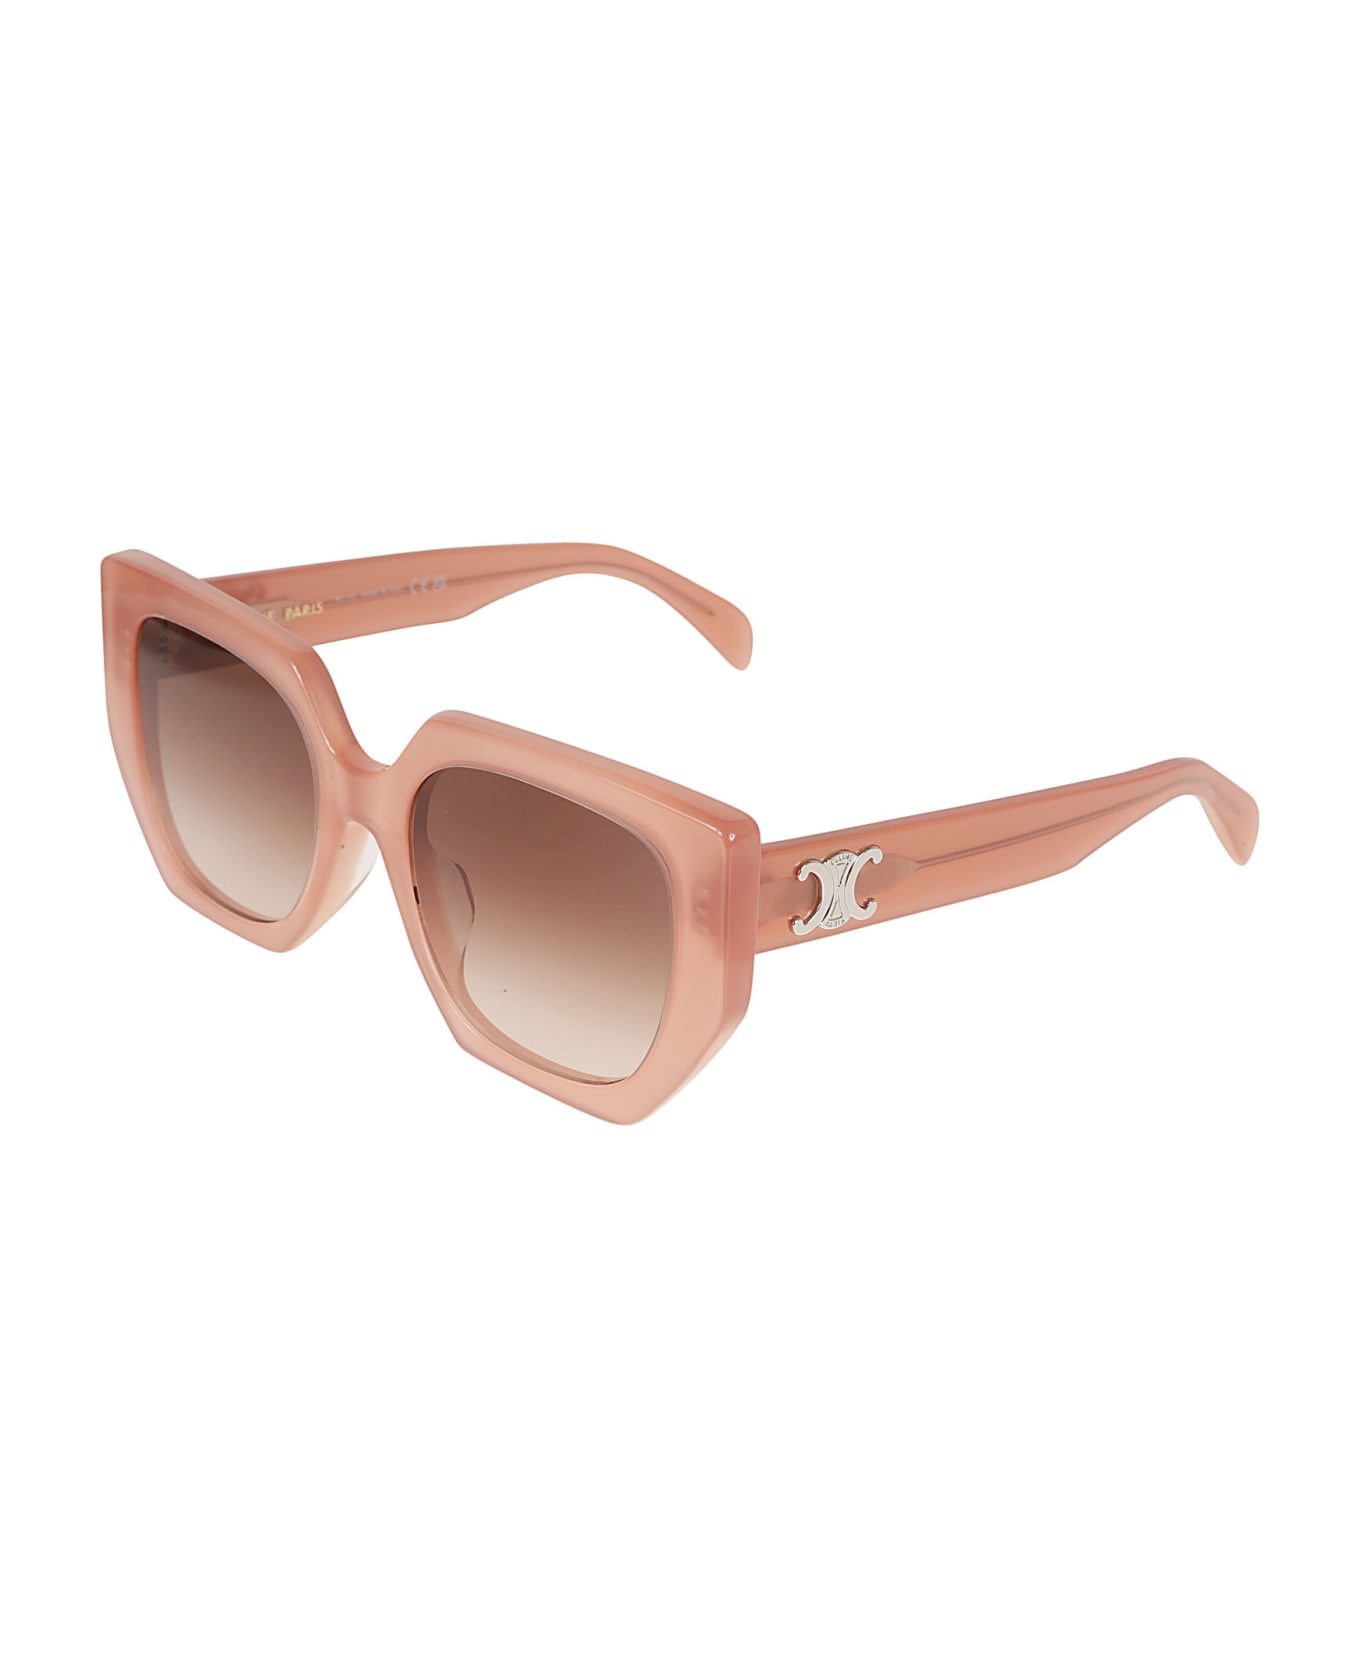 Celine Wayfarer 6 Side Sunglasses Cleitus - Light pink